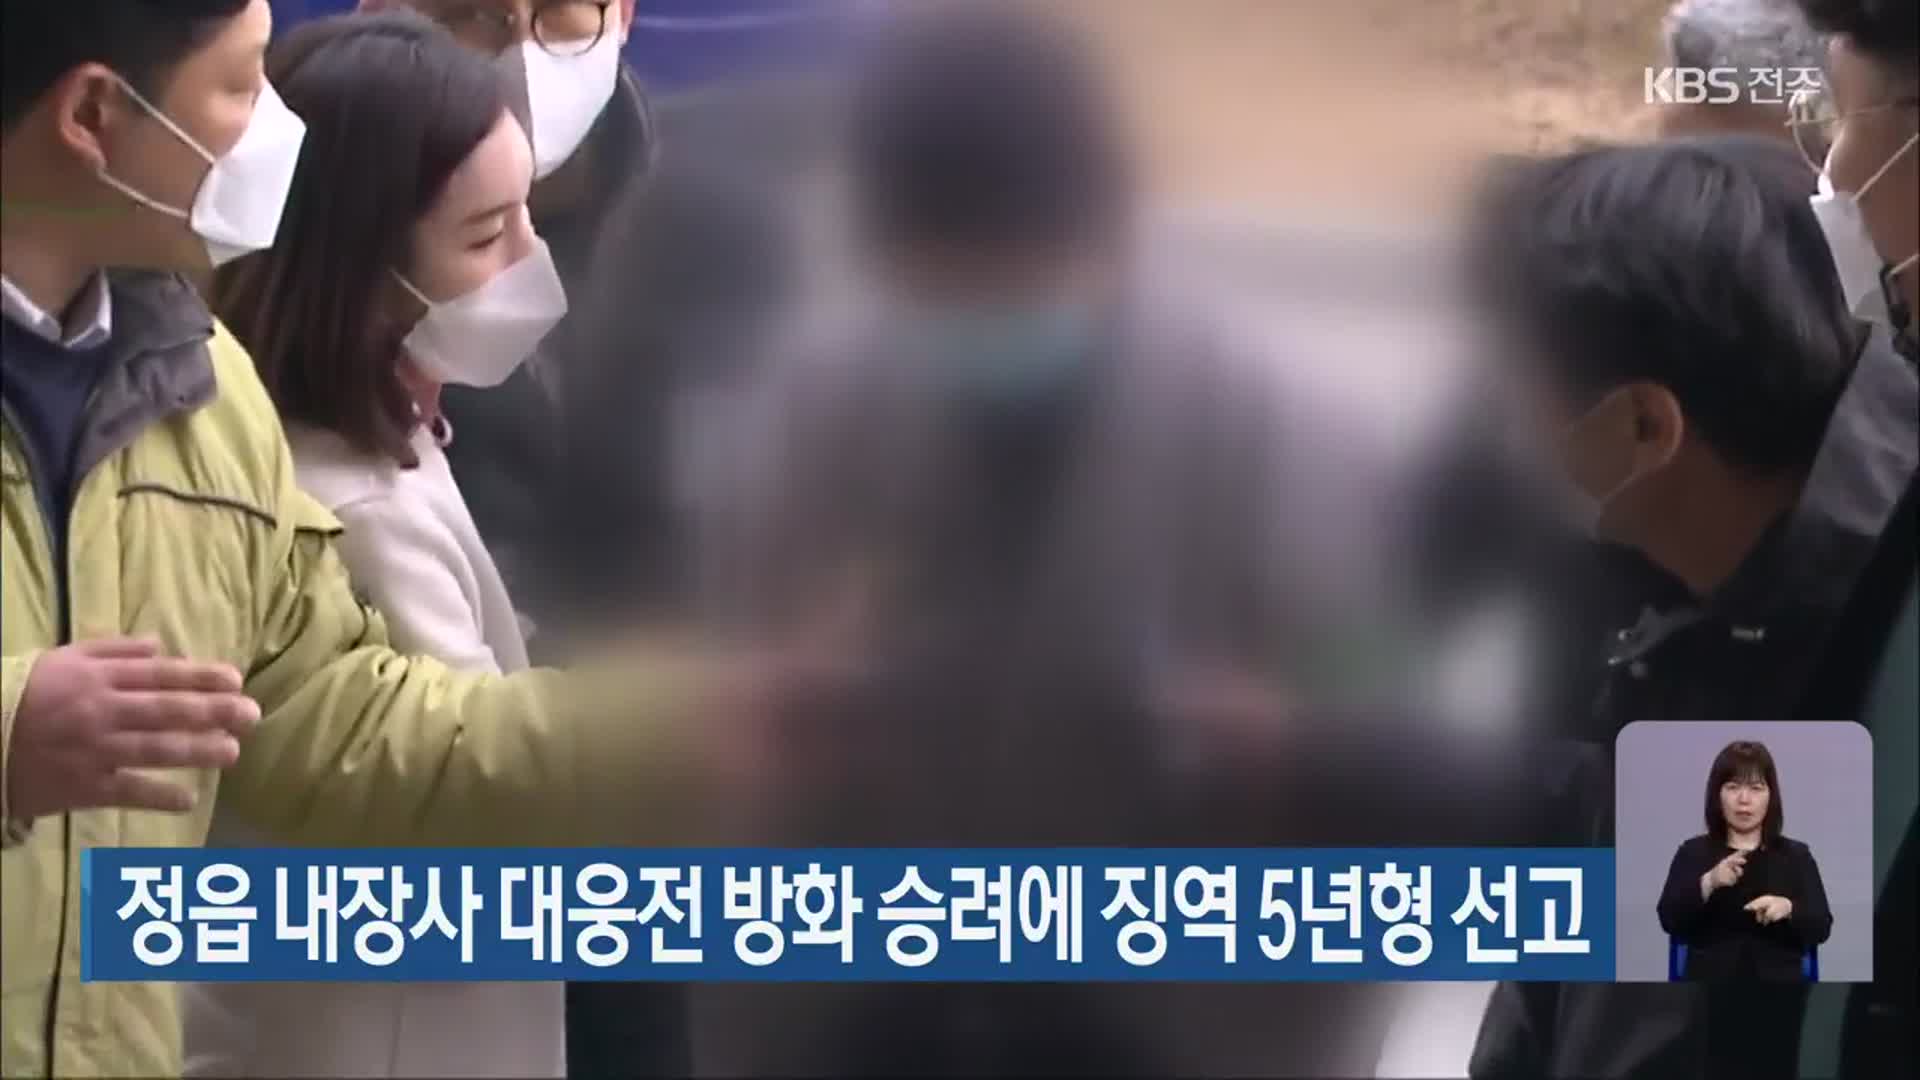 정읍 내장사 대웅전 방화 승려에 징역 5년형 선고